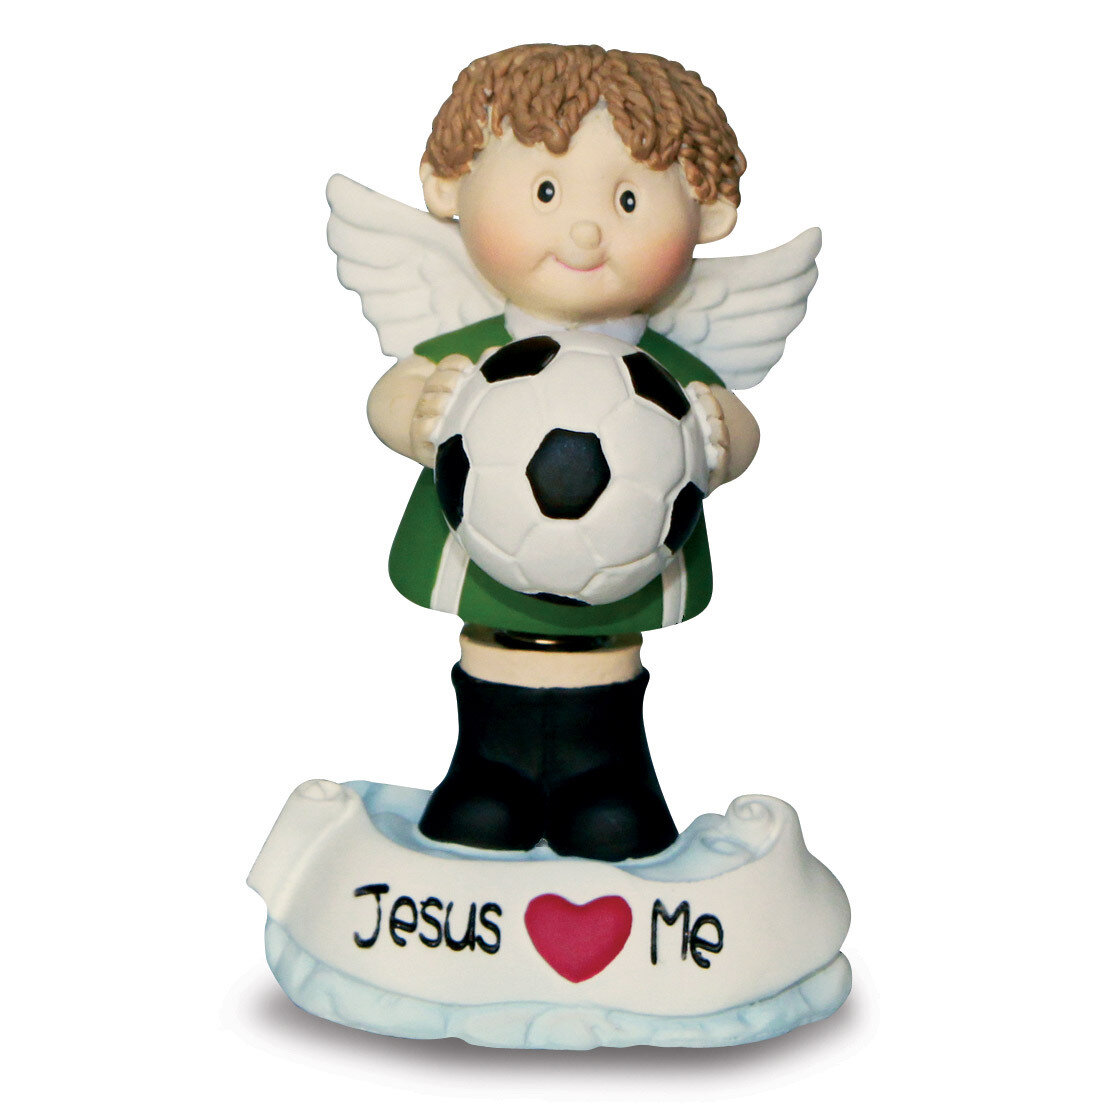 Angel Buddy Soccer Boy Bobble Head Figurine GM17978